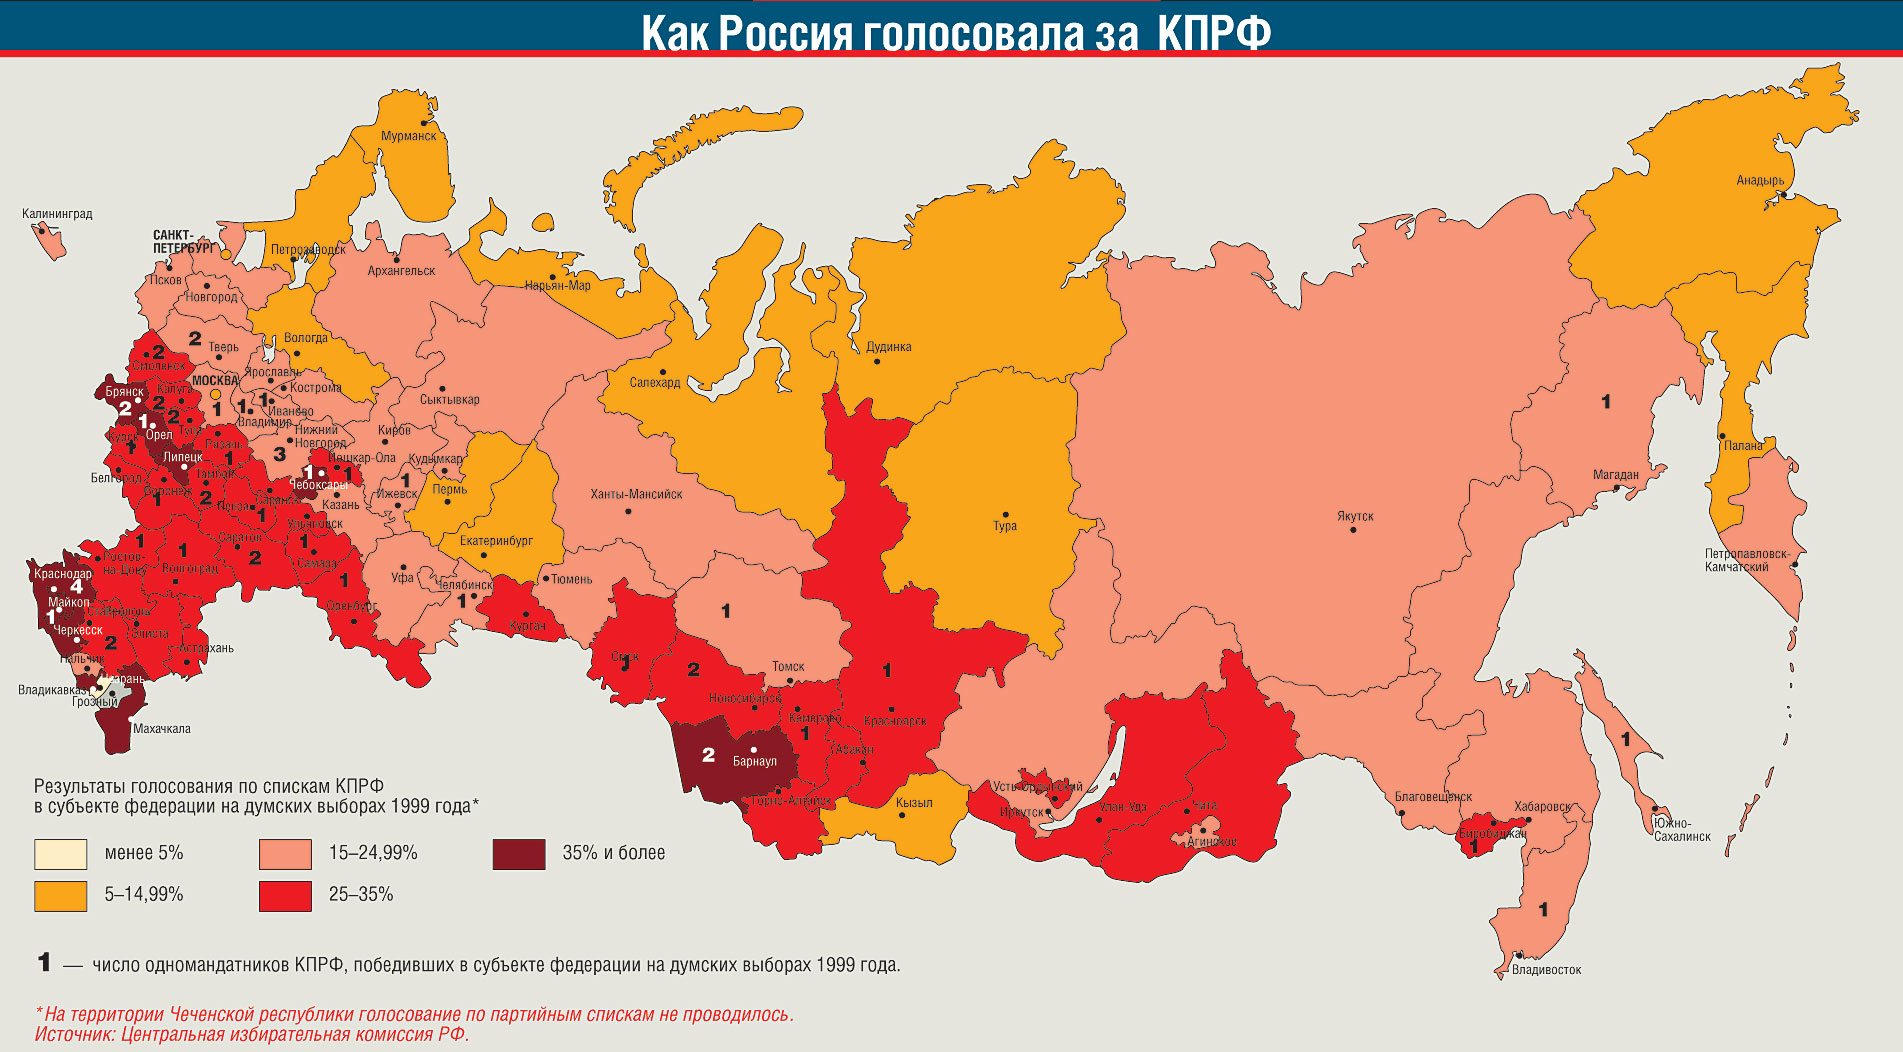 Где больше всего проголосовали. КПРФ на карте России. Российские регионы за КПРФ. Регионы России. Карта религий России по субъектам.